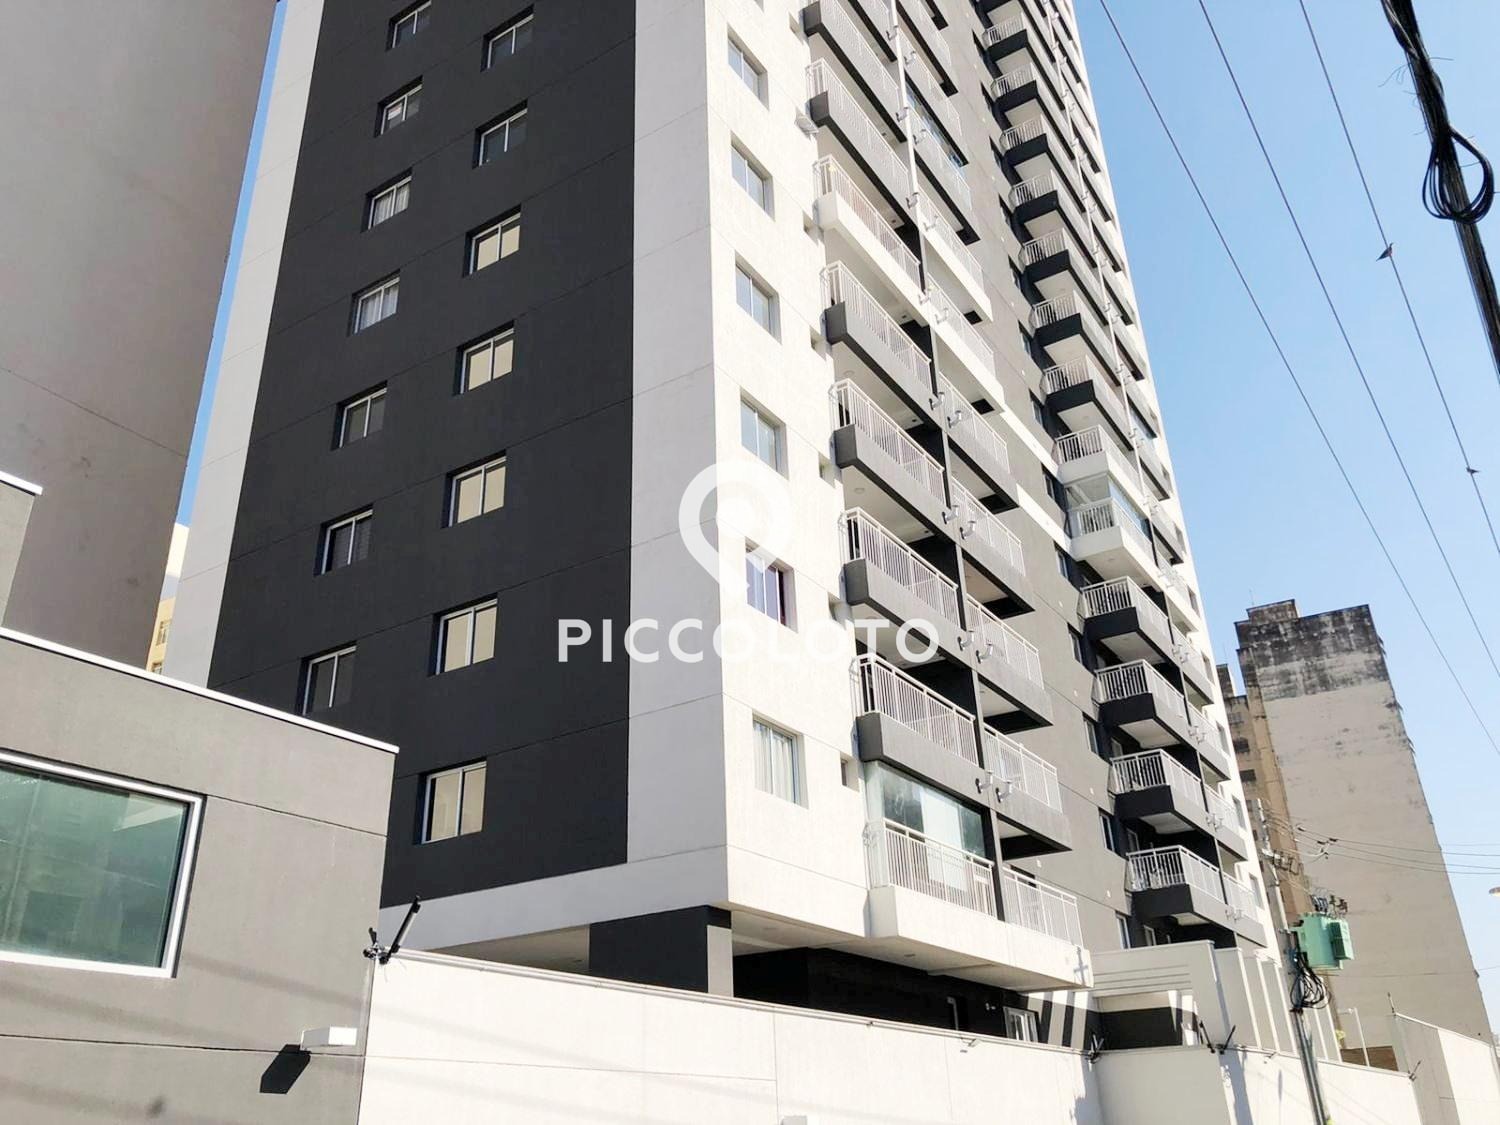 Piccoloto -Apartamento à venda no Centro em Campinas